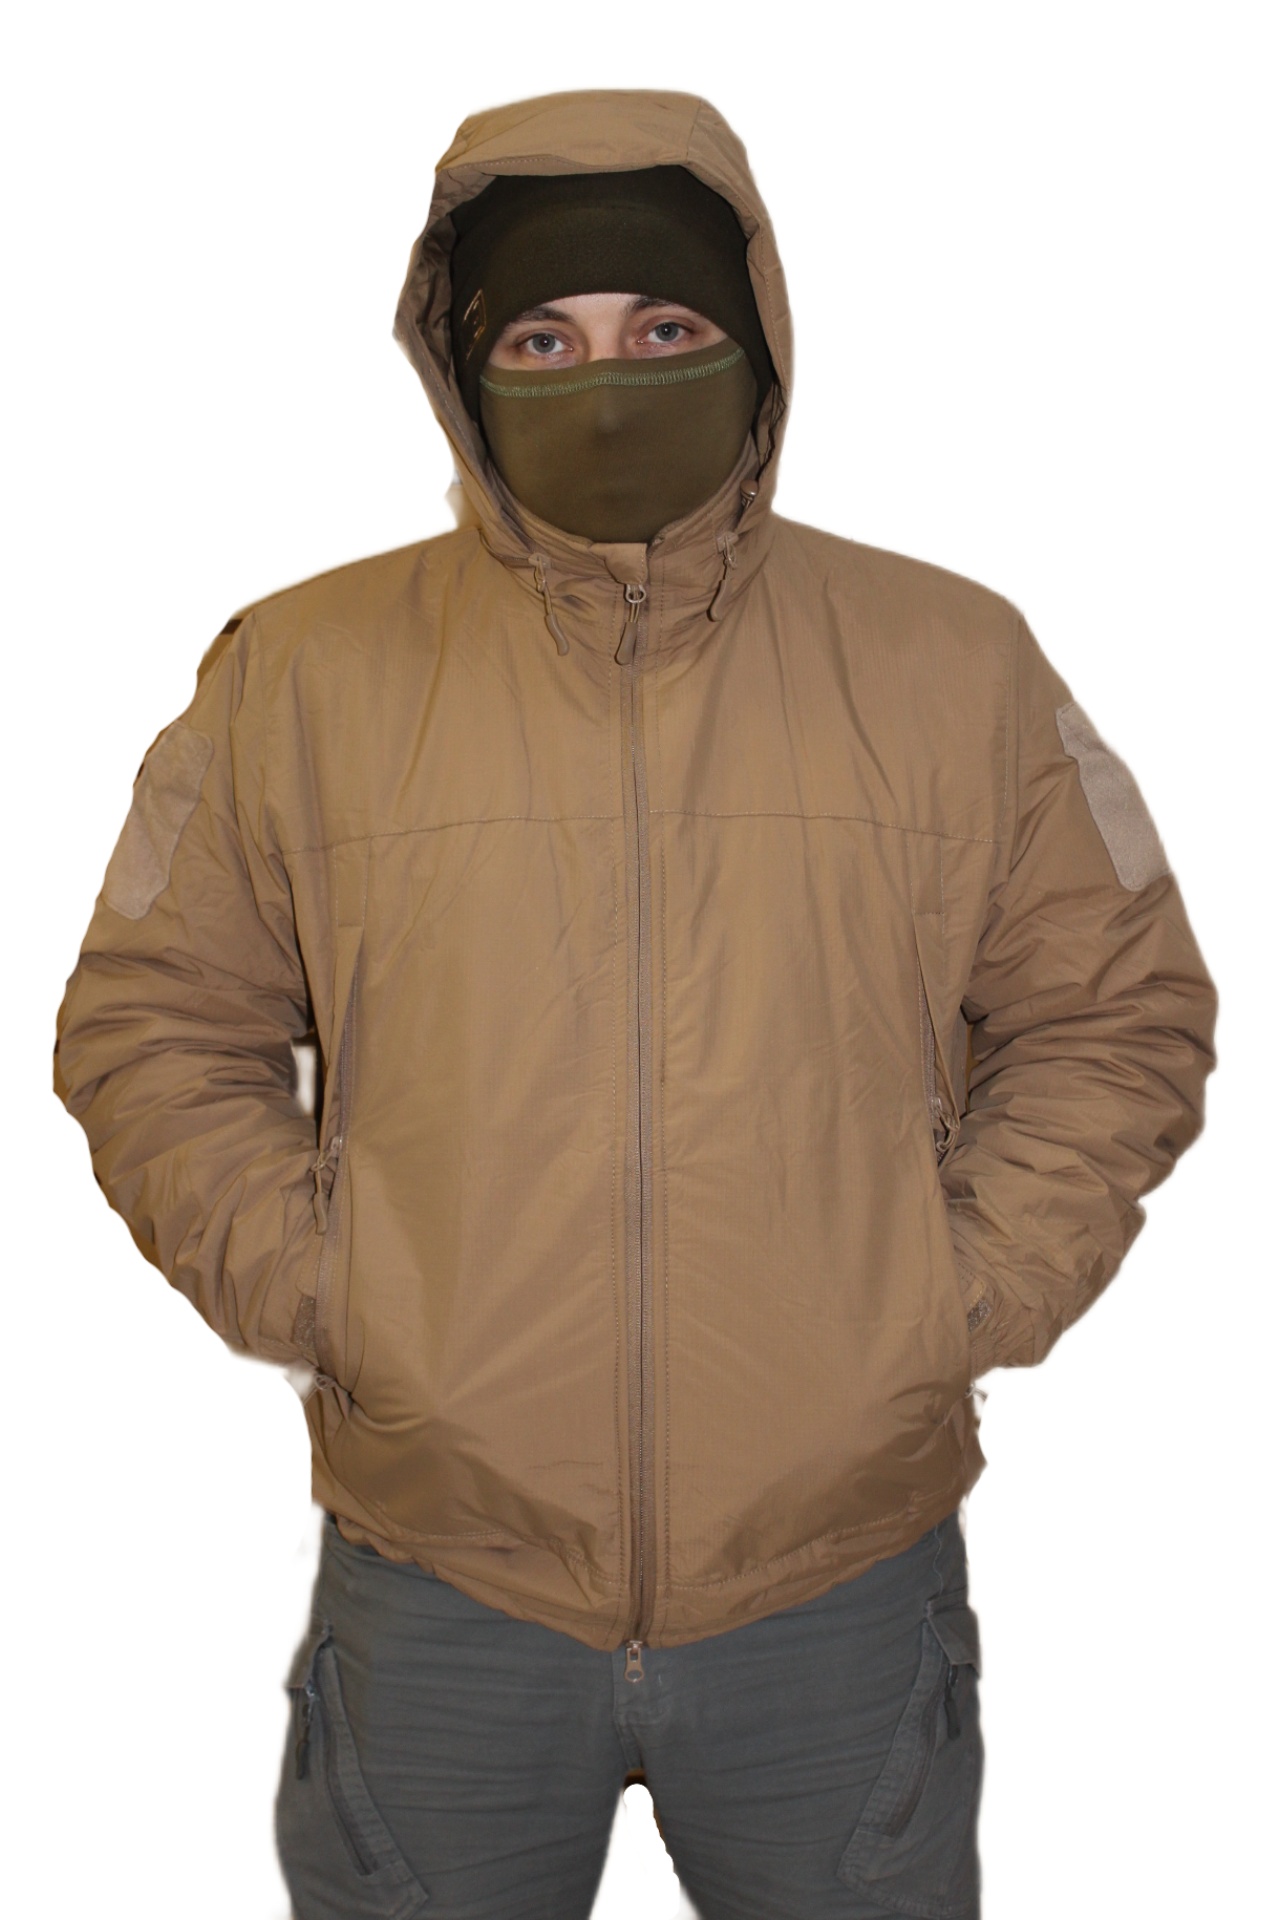 Зимняя куртка мужская Военсклад МСК 25271 бежевая L